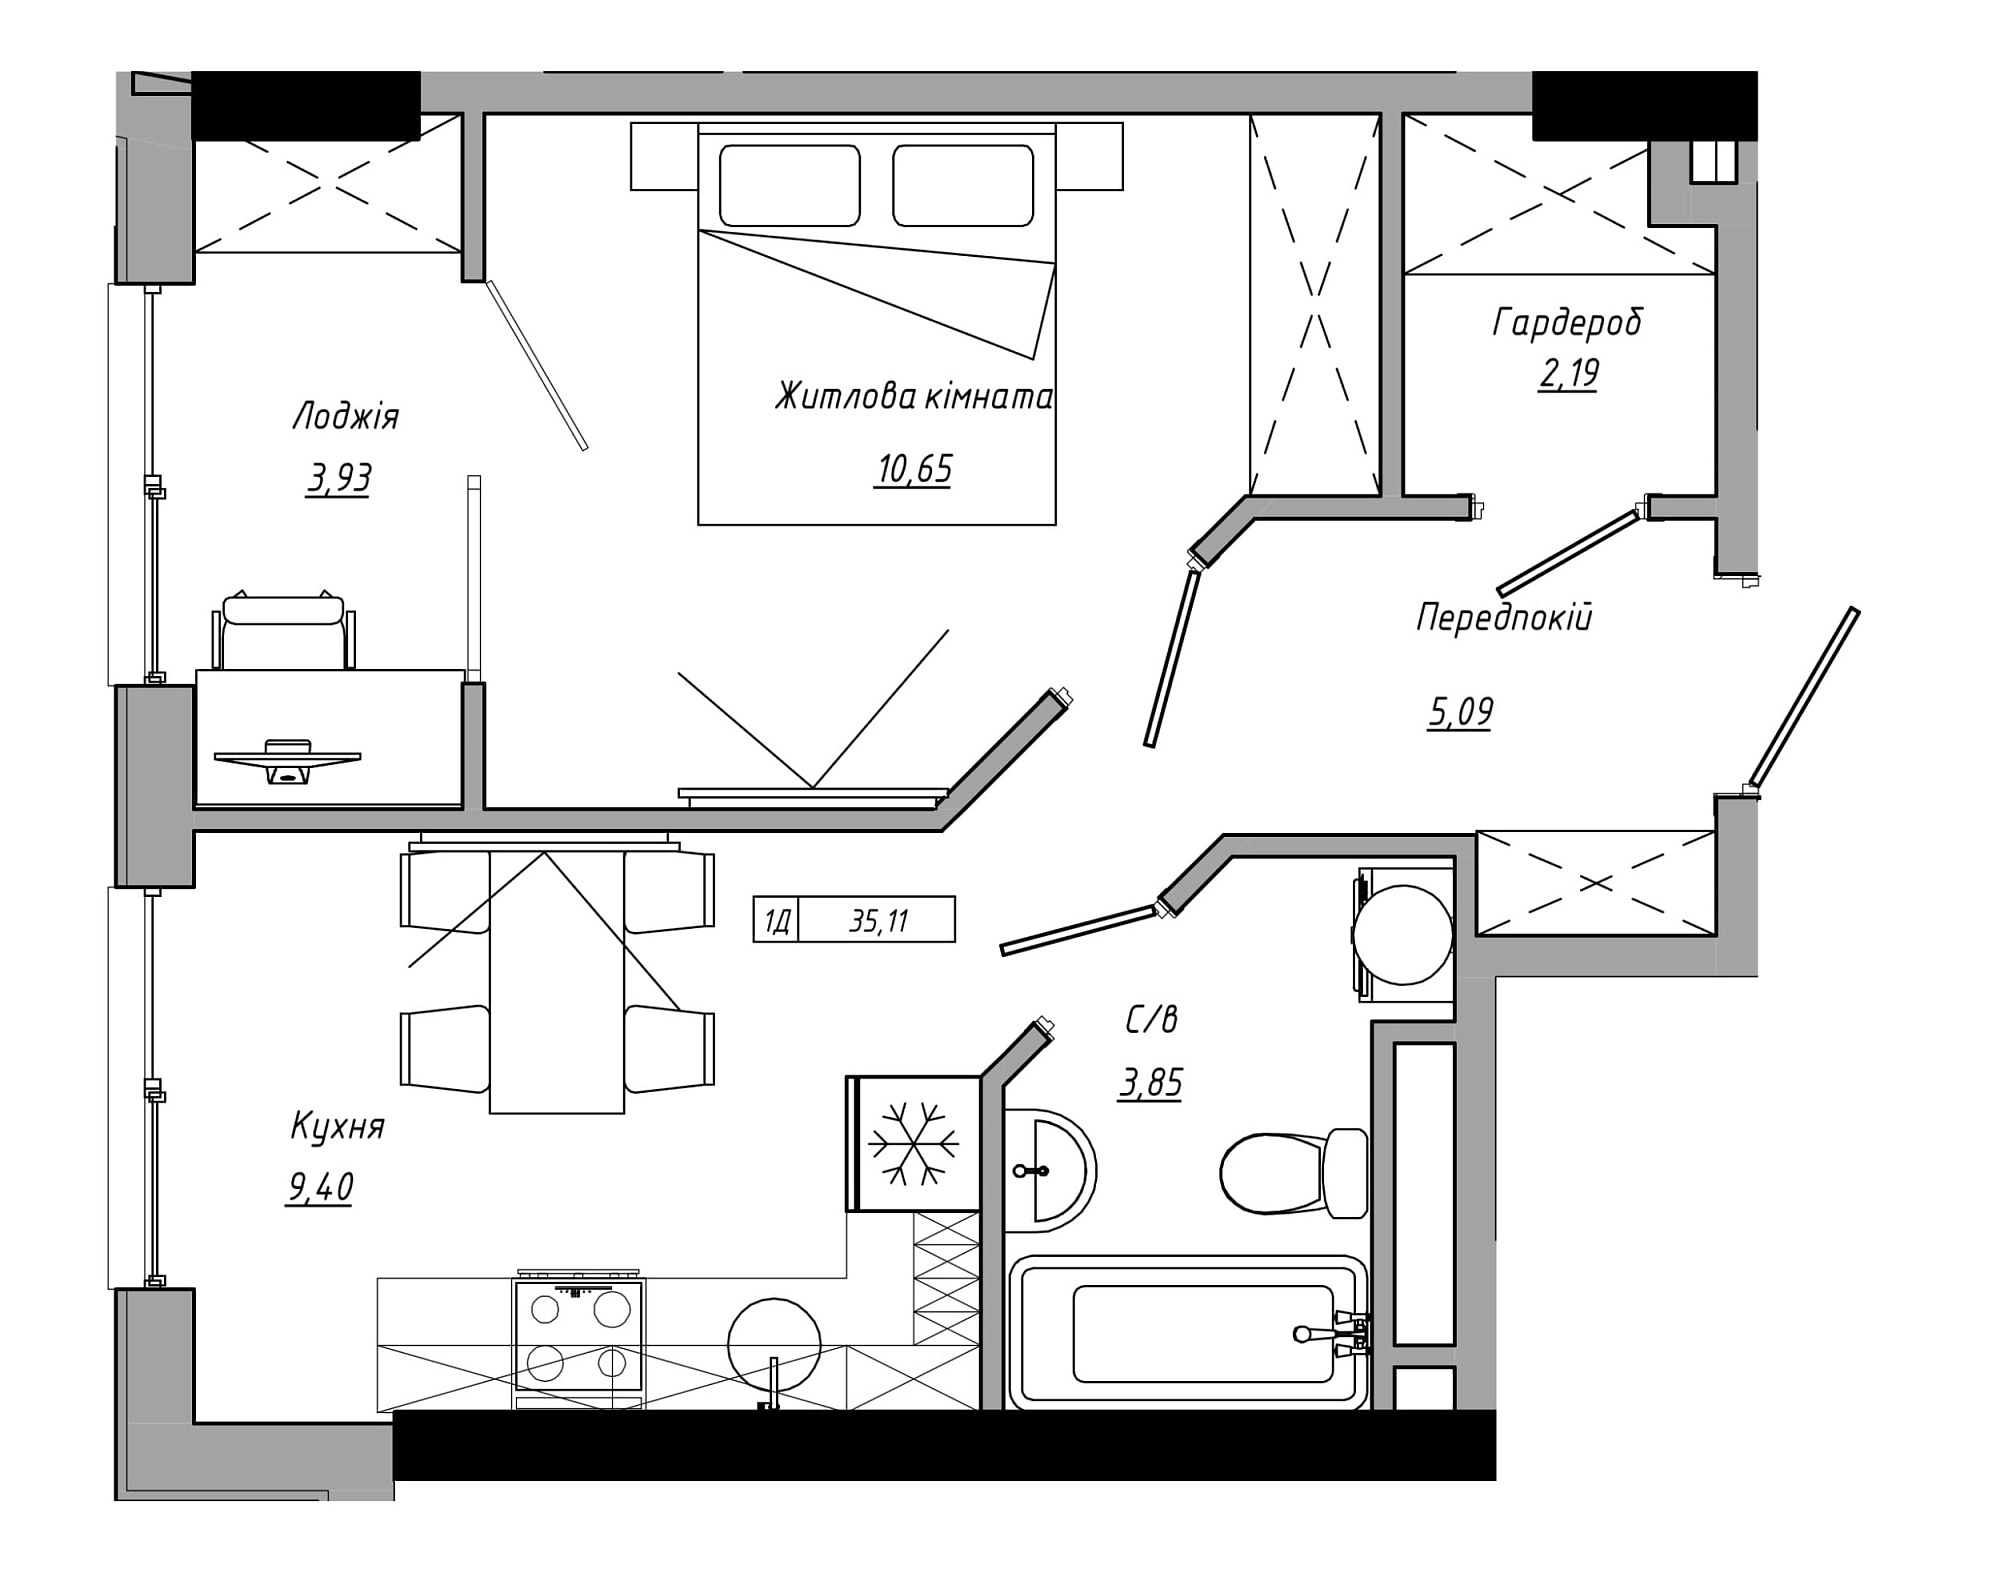 Планировка 1-к квартира площей 35.11м2, AB-21-08/00006.